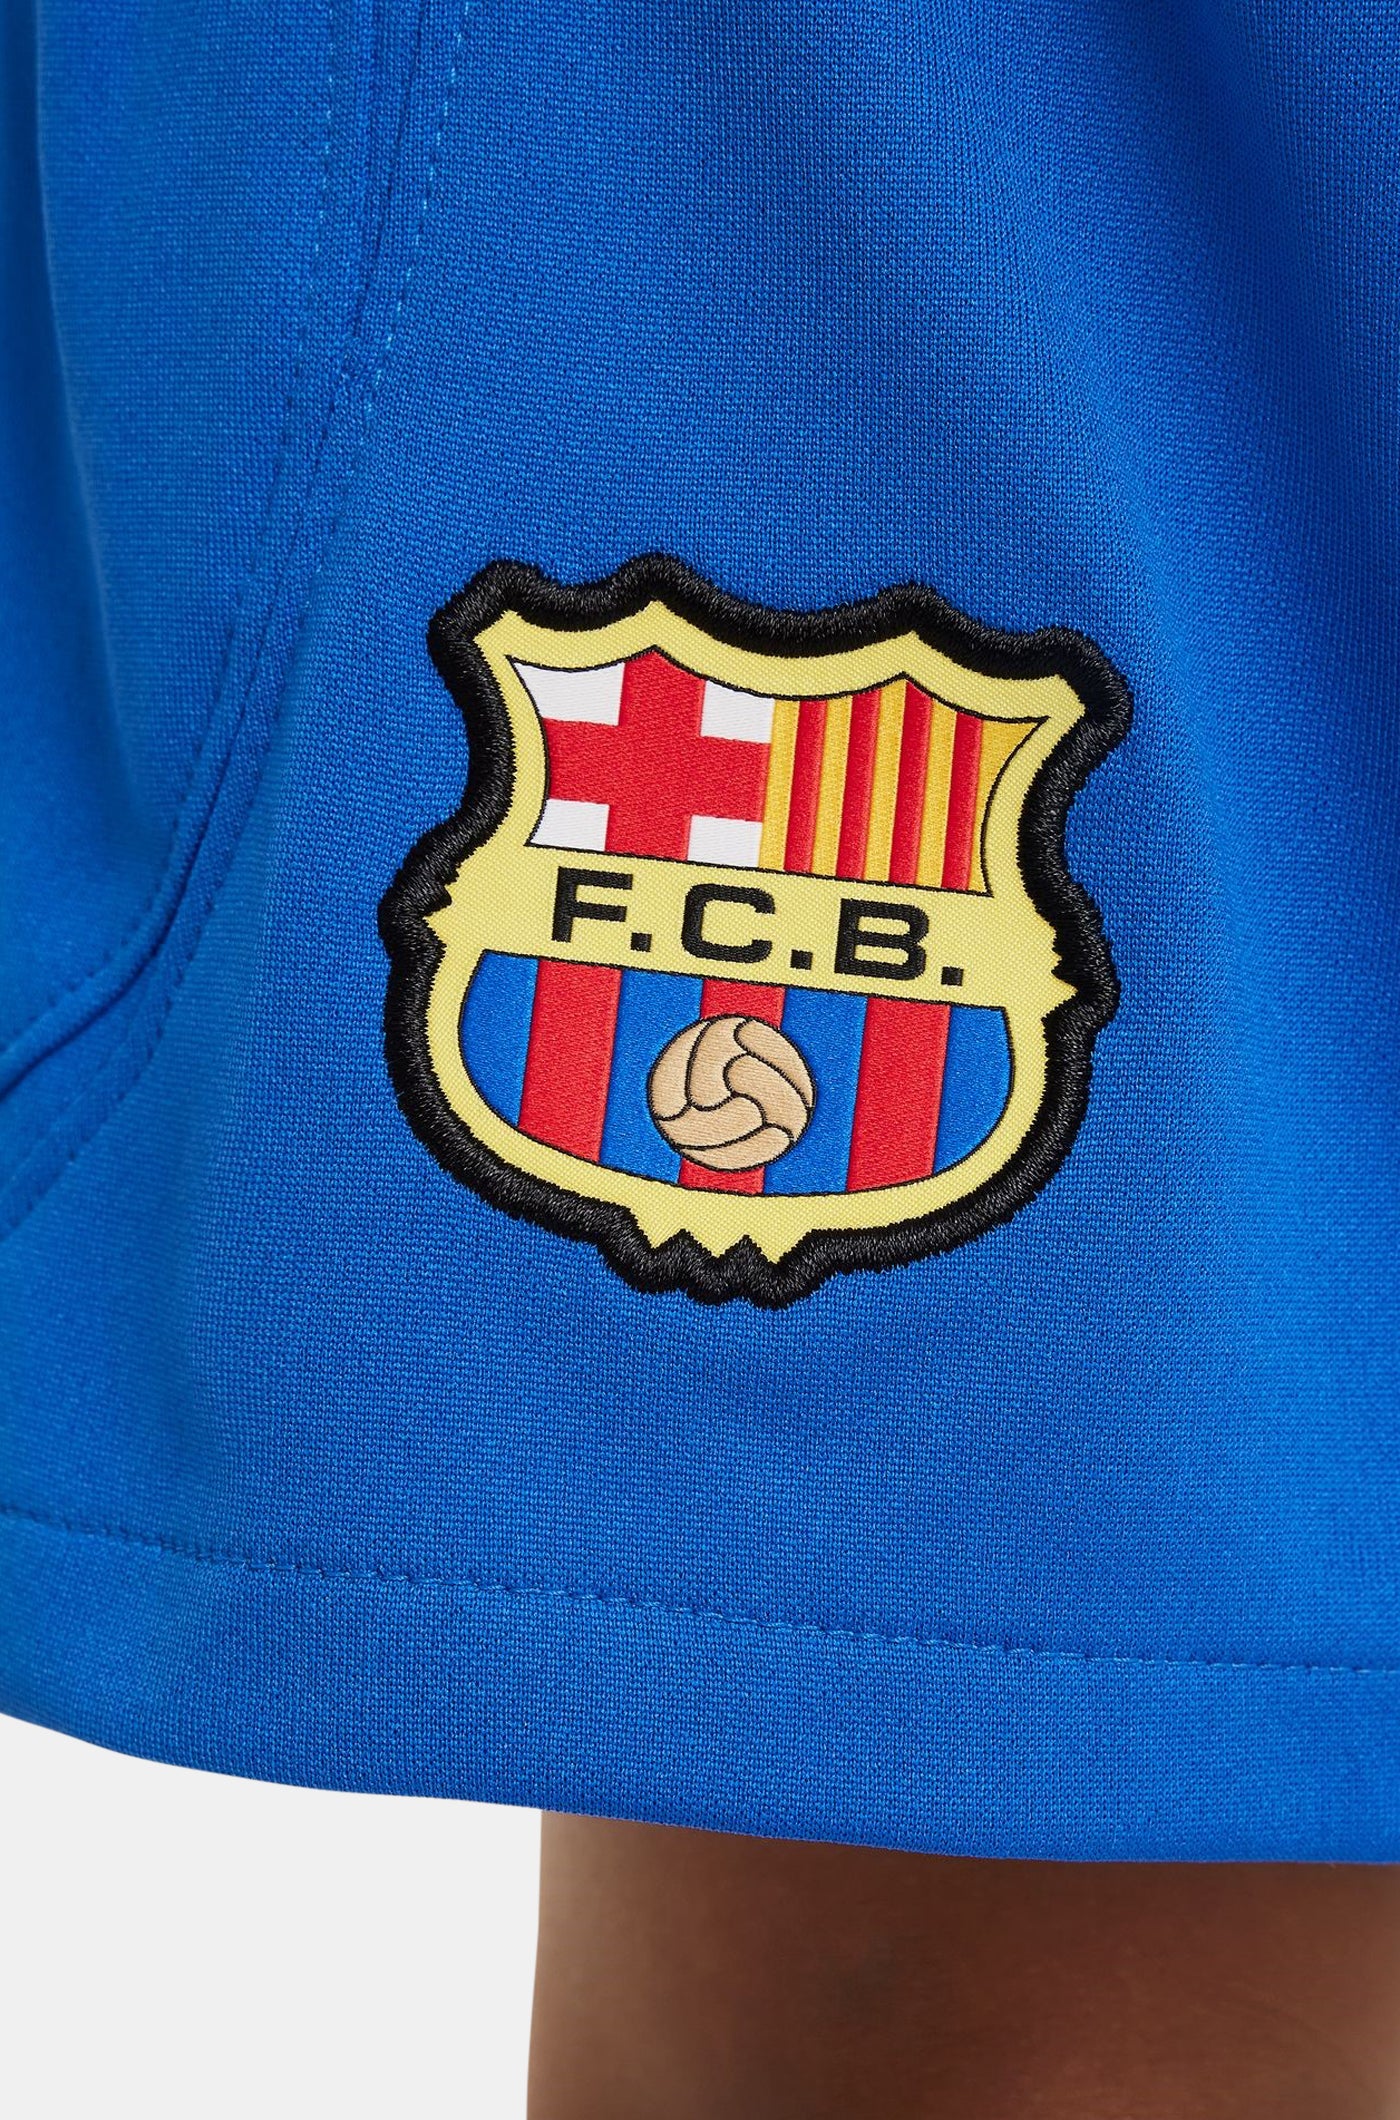 Conjunt segon equipament FC Barcelona 23/24 - Nen/a petit/a 